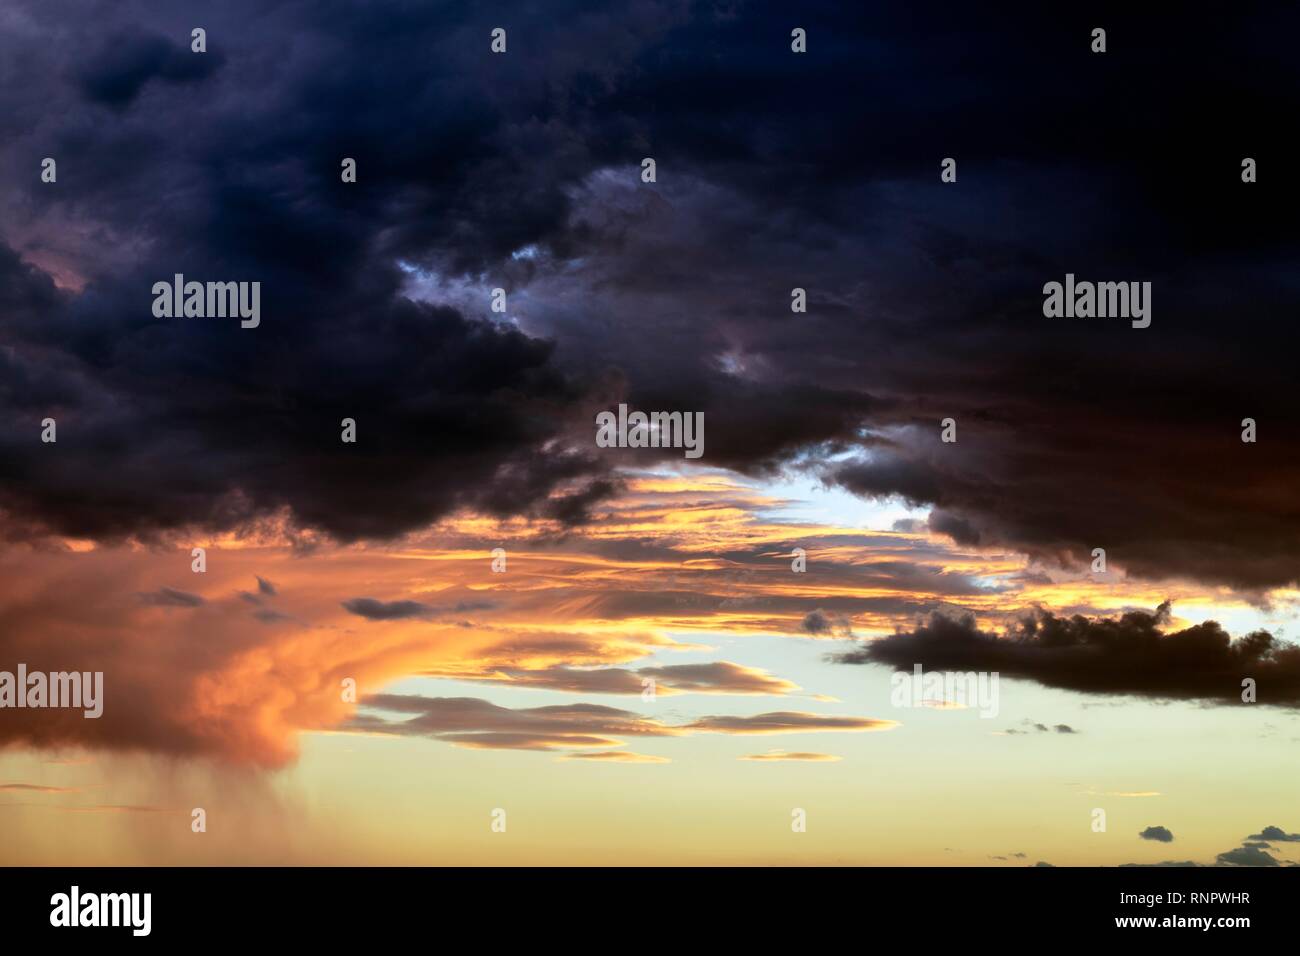 Dramatische wolken himmel, dunkle Gewitterwolken mit Sonnenuntergang, Stürme, Andalusien, Spanien Stockfoto